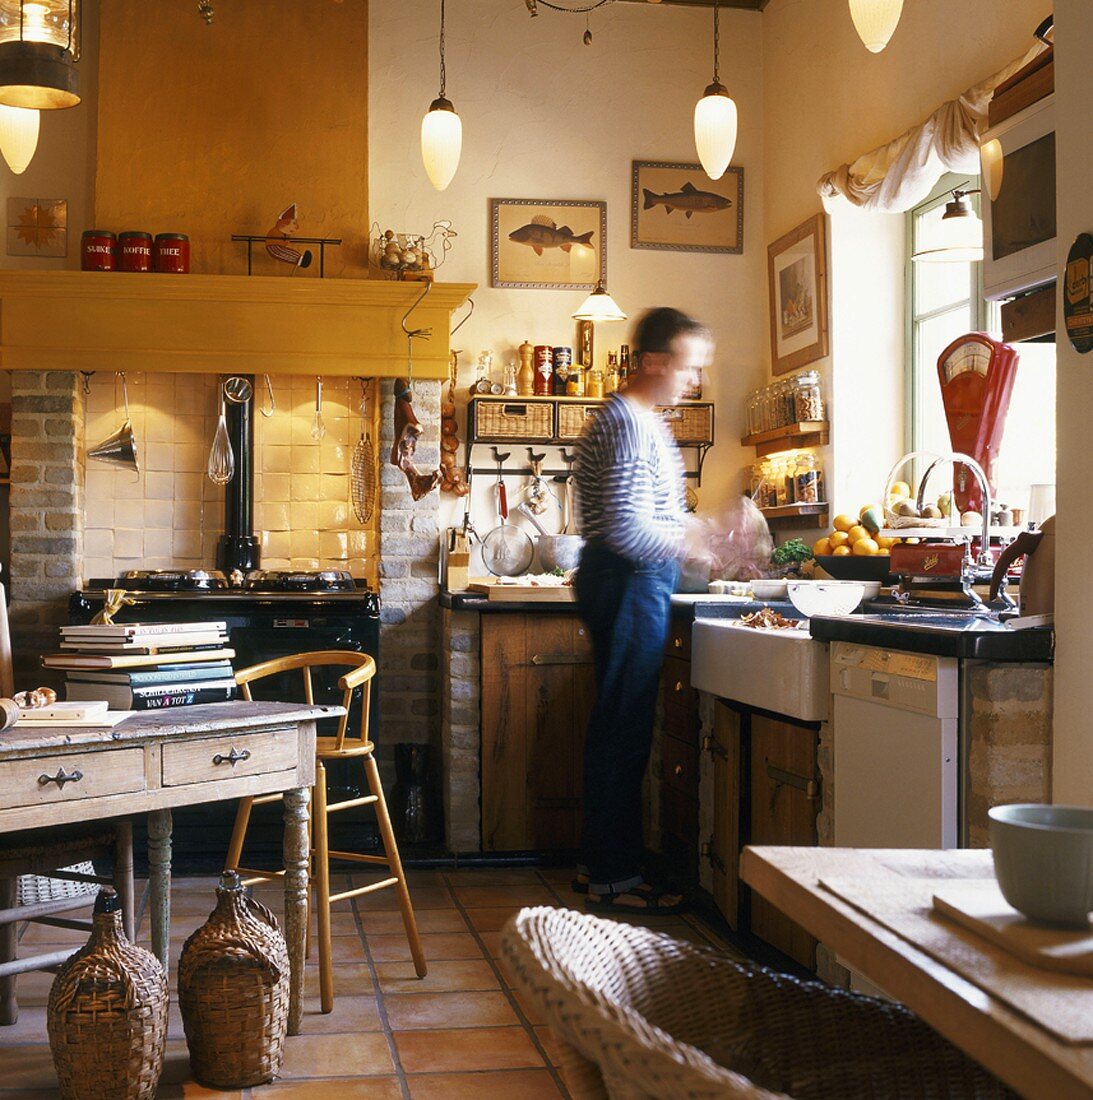 Landhausküche mit antikem Küchenofen und kochendem Mann